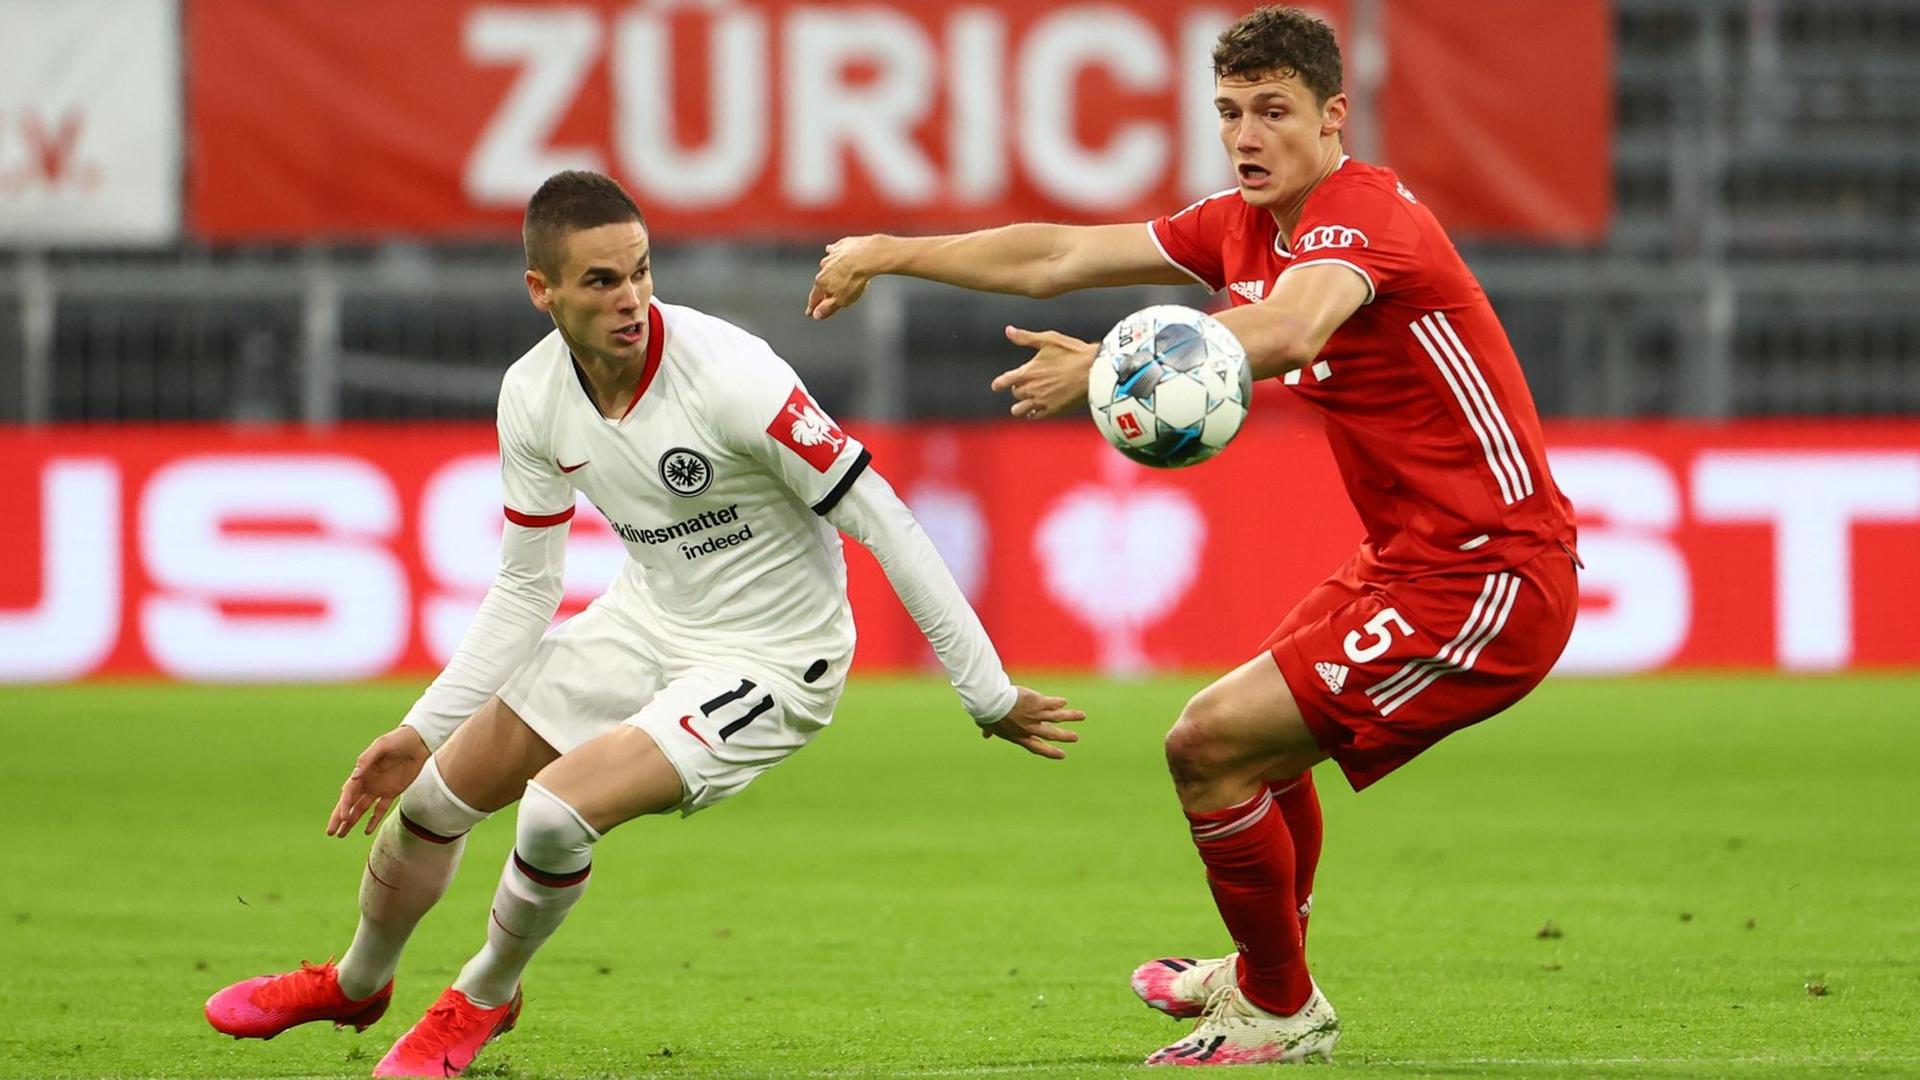 Das Bild zeigt eine Zweikampf-Szene aus dem Fußball-DFB-Pokal-Spiel Bayern München gegen Eintracht Frankfurt.